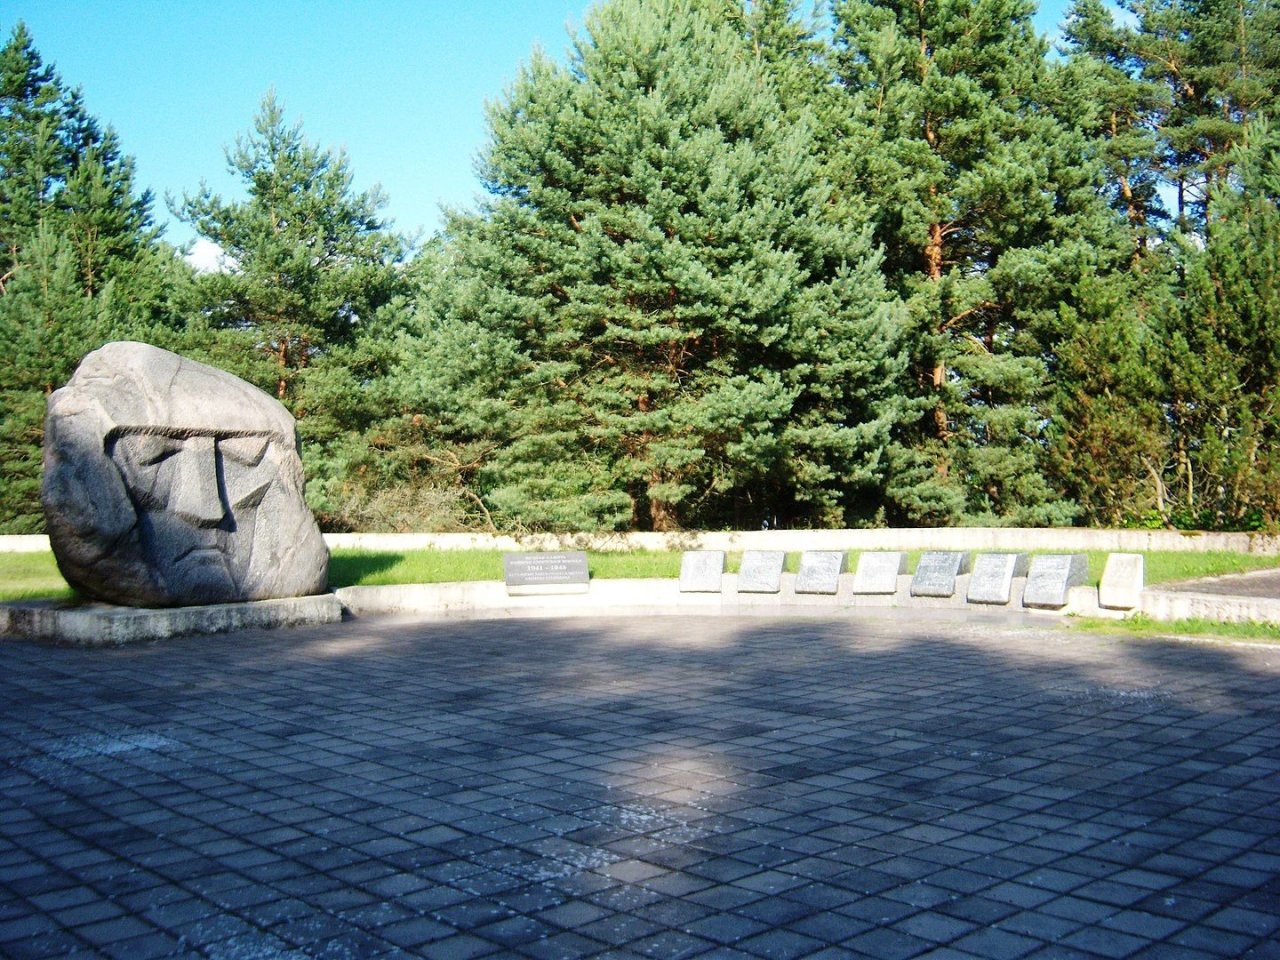 Dėl sovietinio memorialo likimo Neringoje planuoja paklausti gyventojų nuomonės